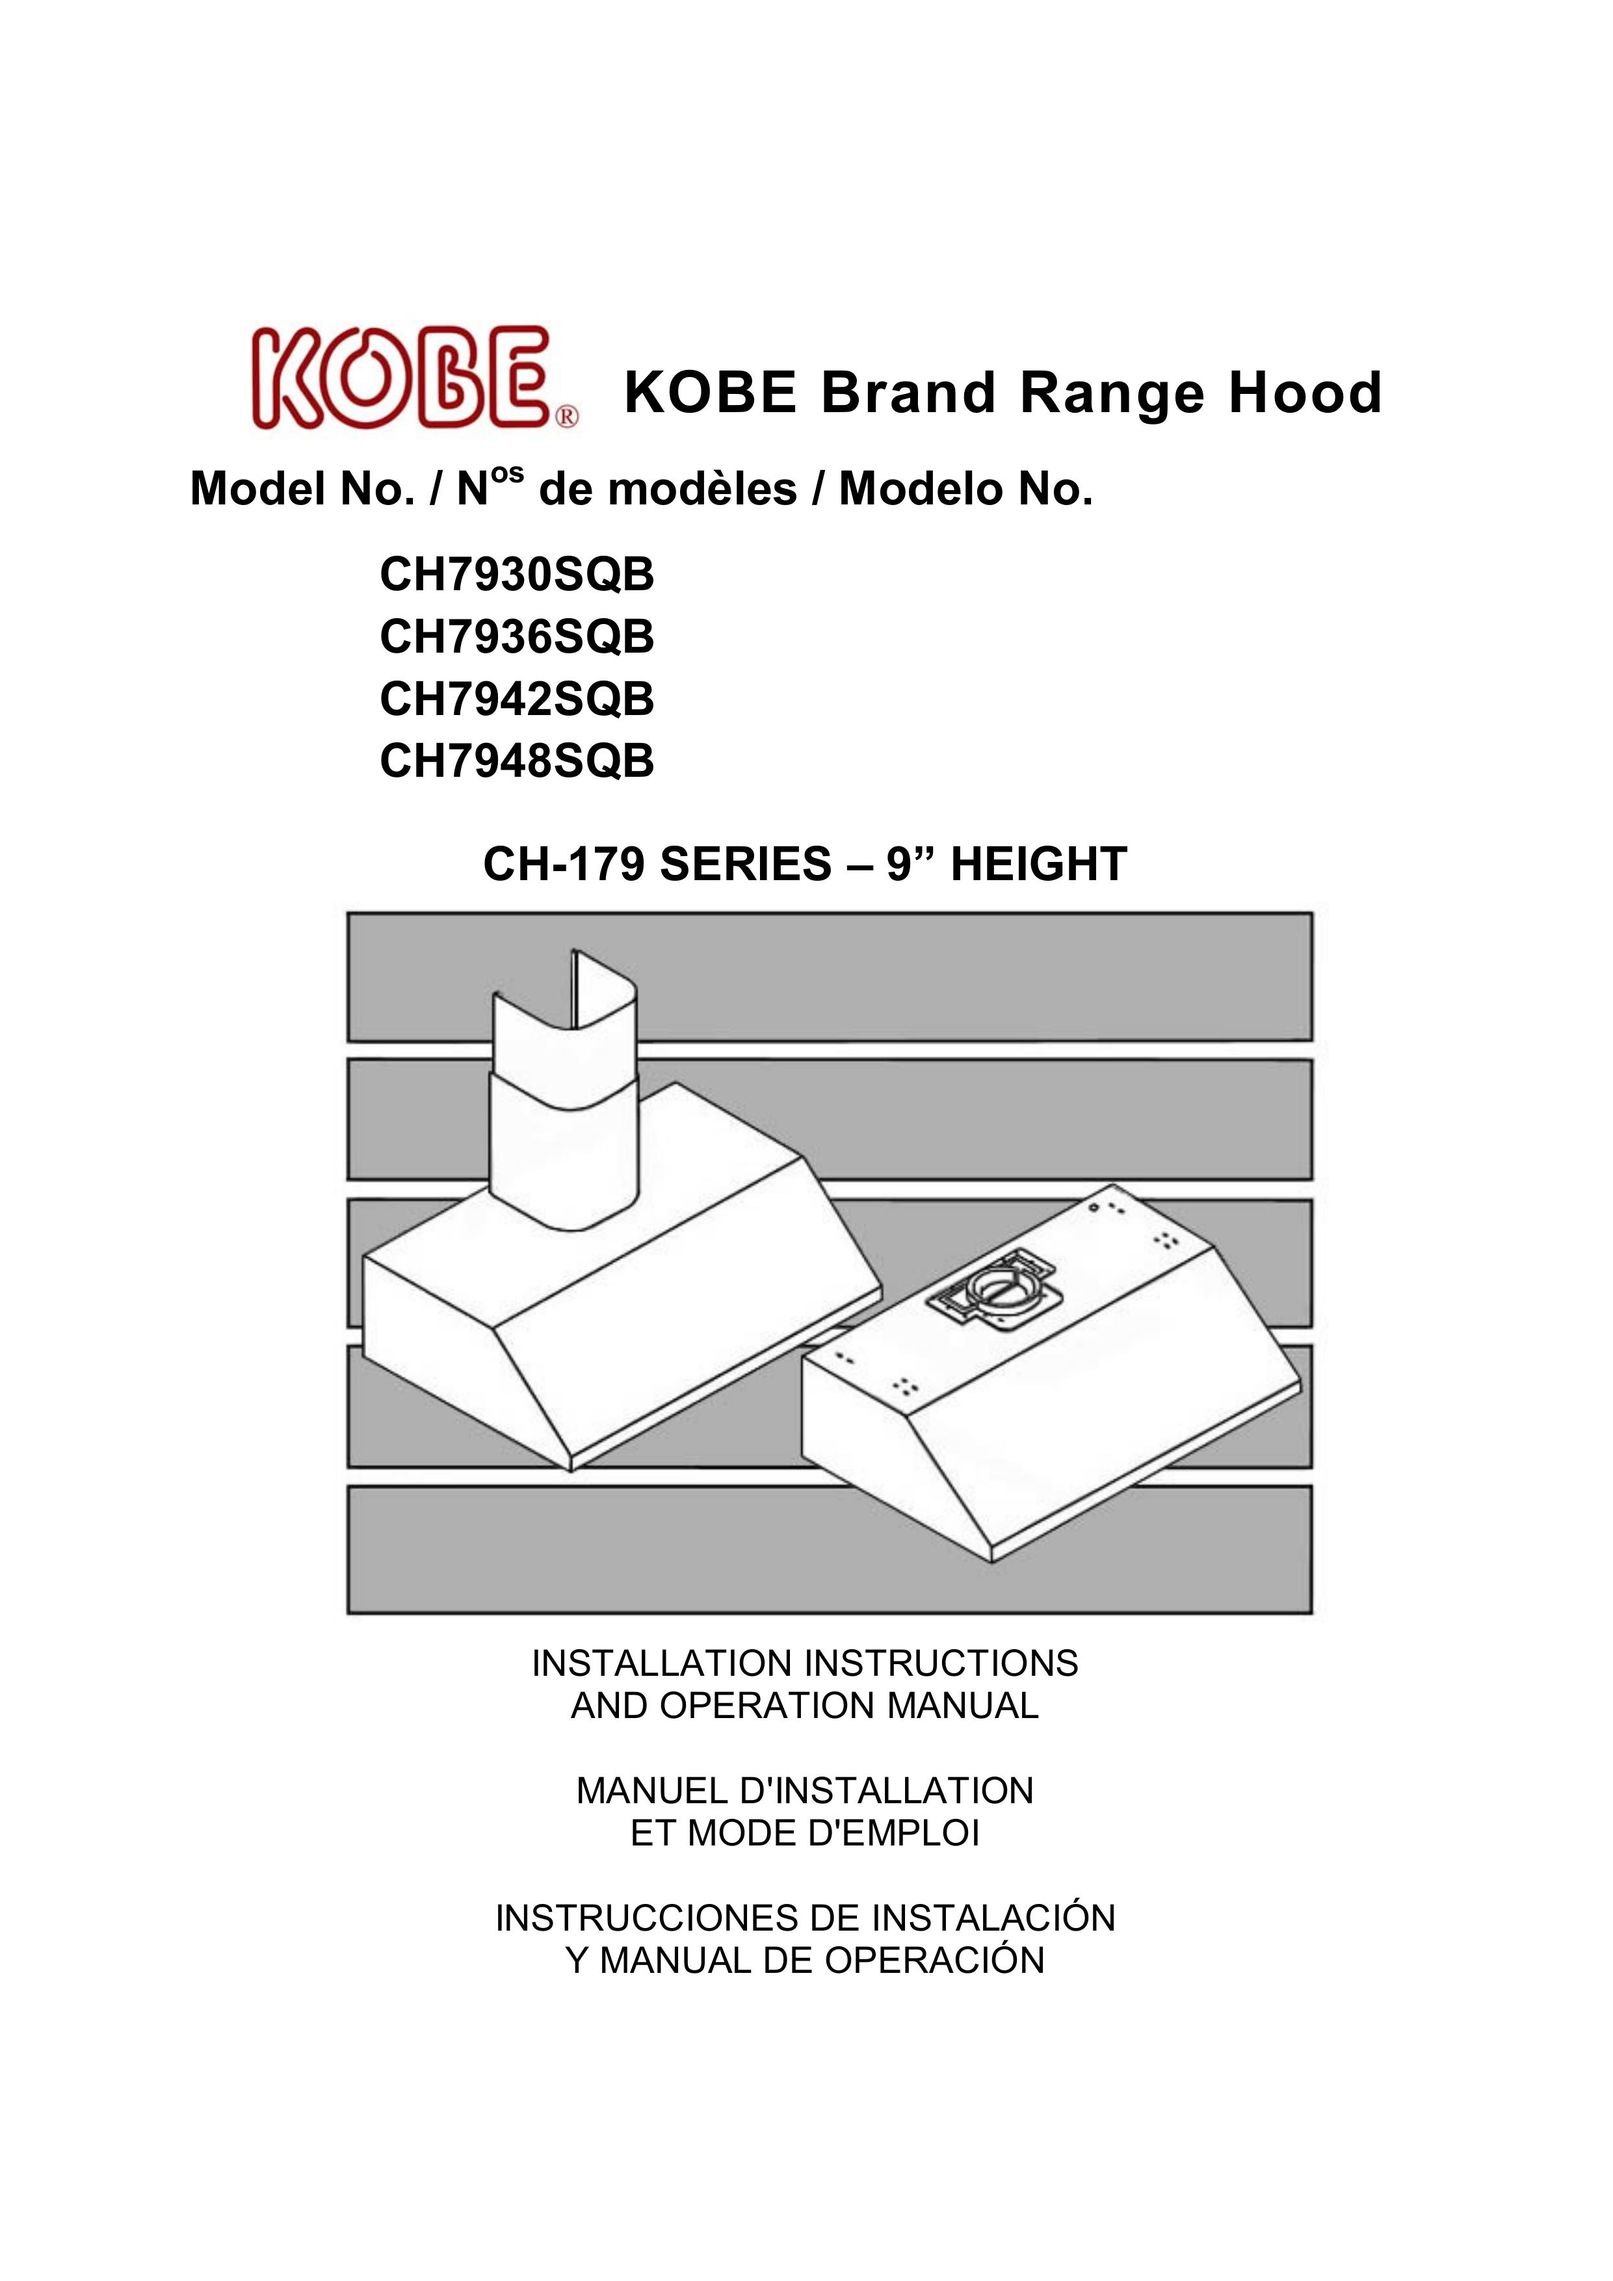 Kobe Range Hoods CH7930SQB Elliptical Trainer User Manual